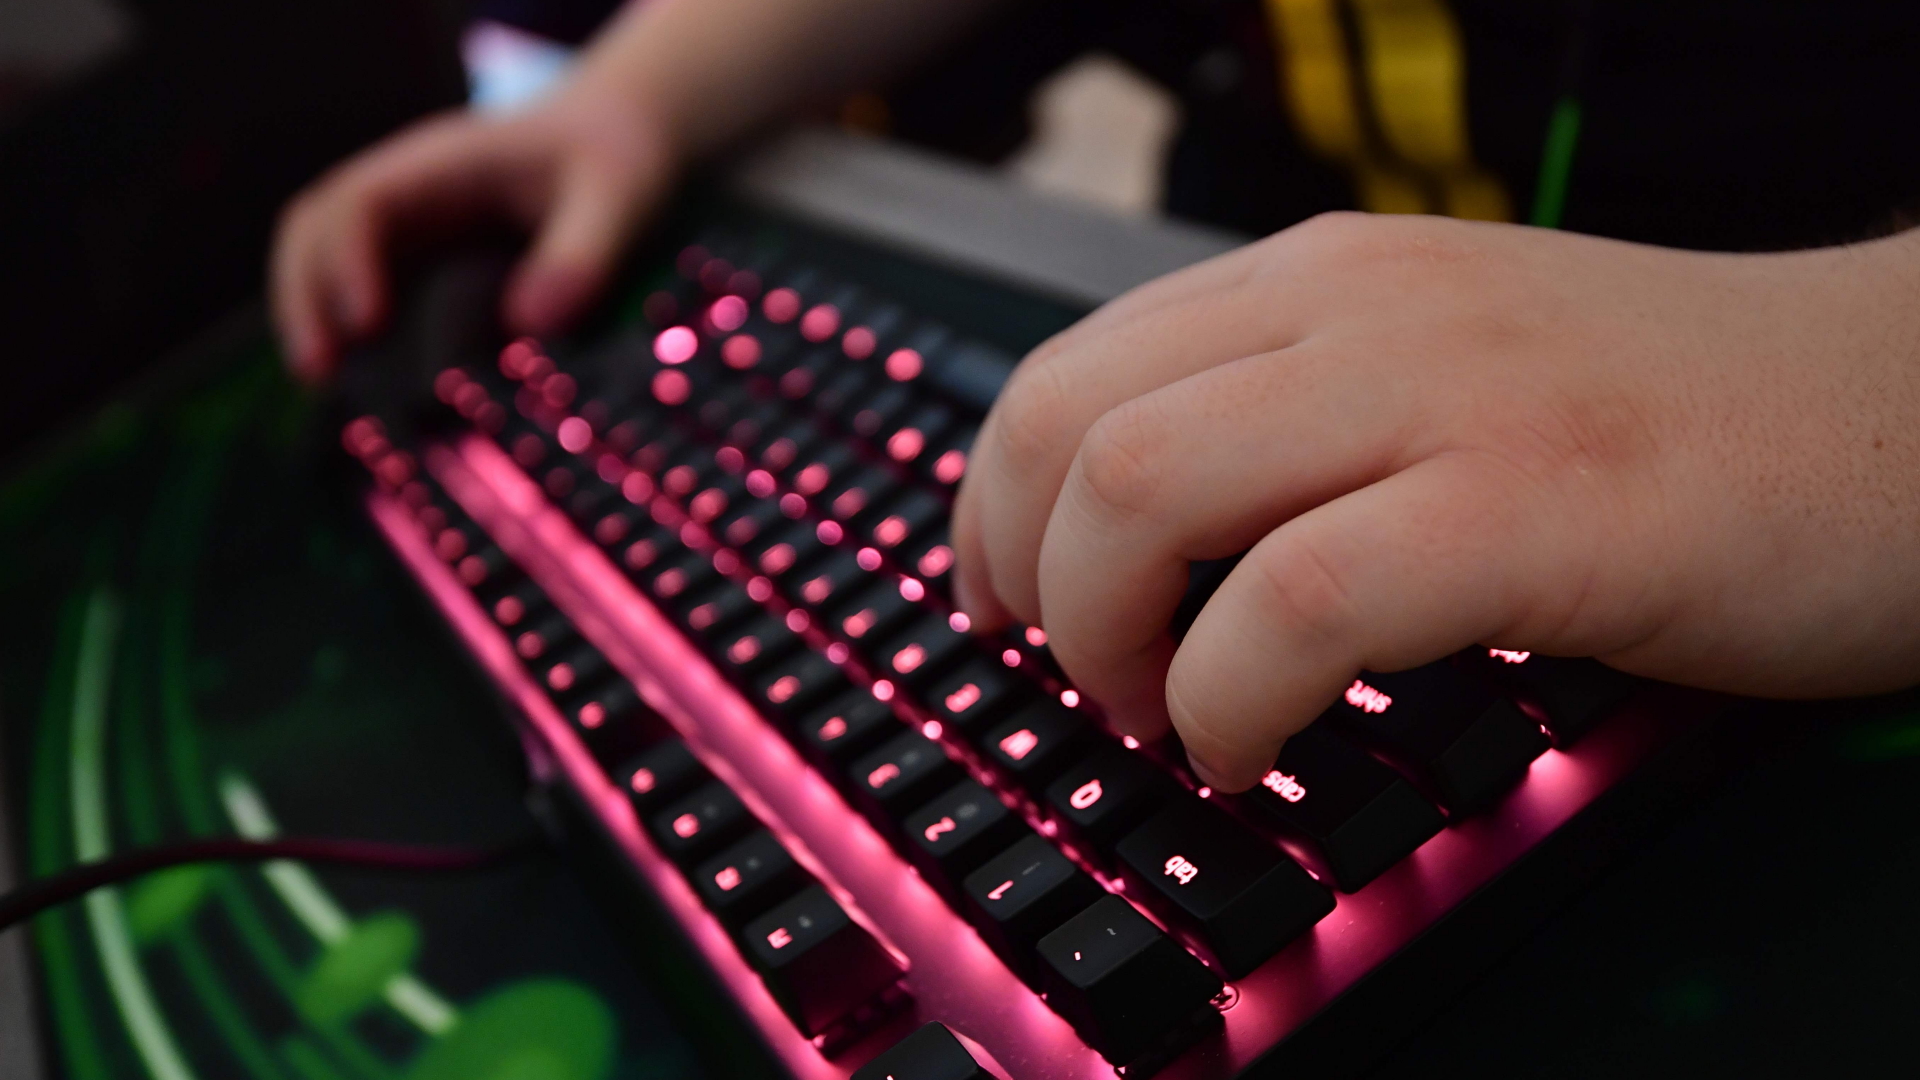 Die Hände eines Gamers auf einer beleuchteten Tastatur